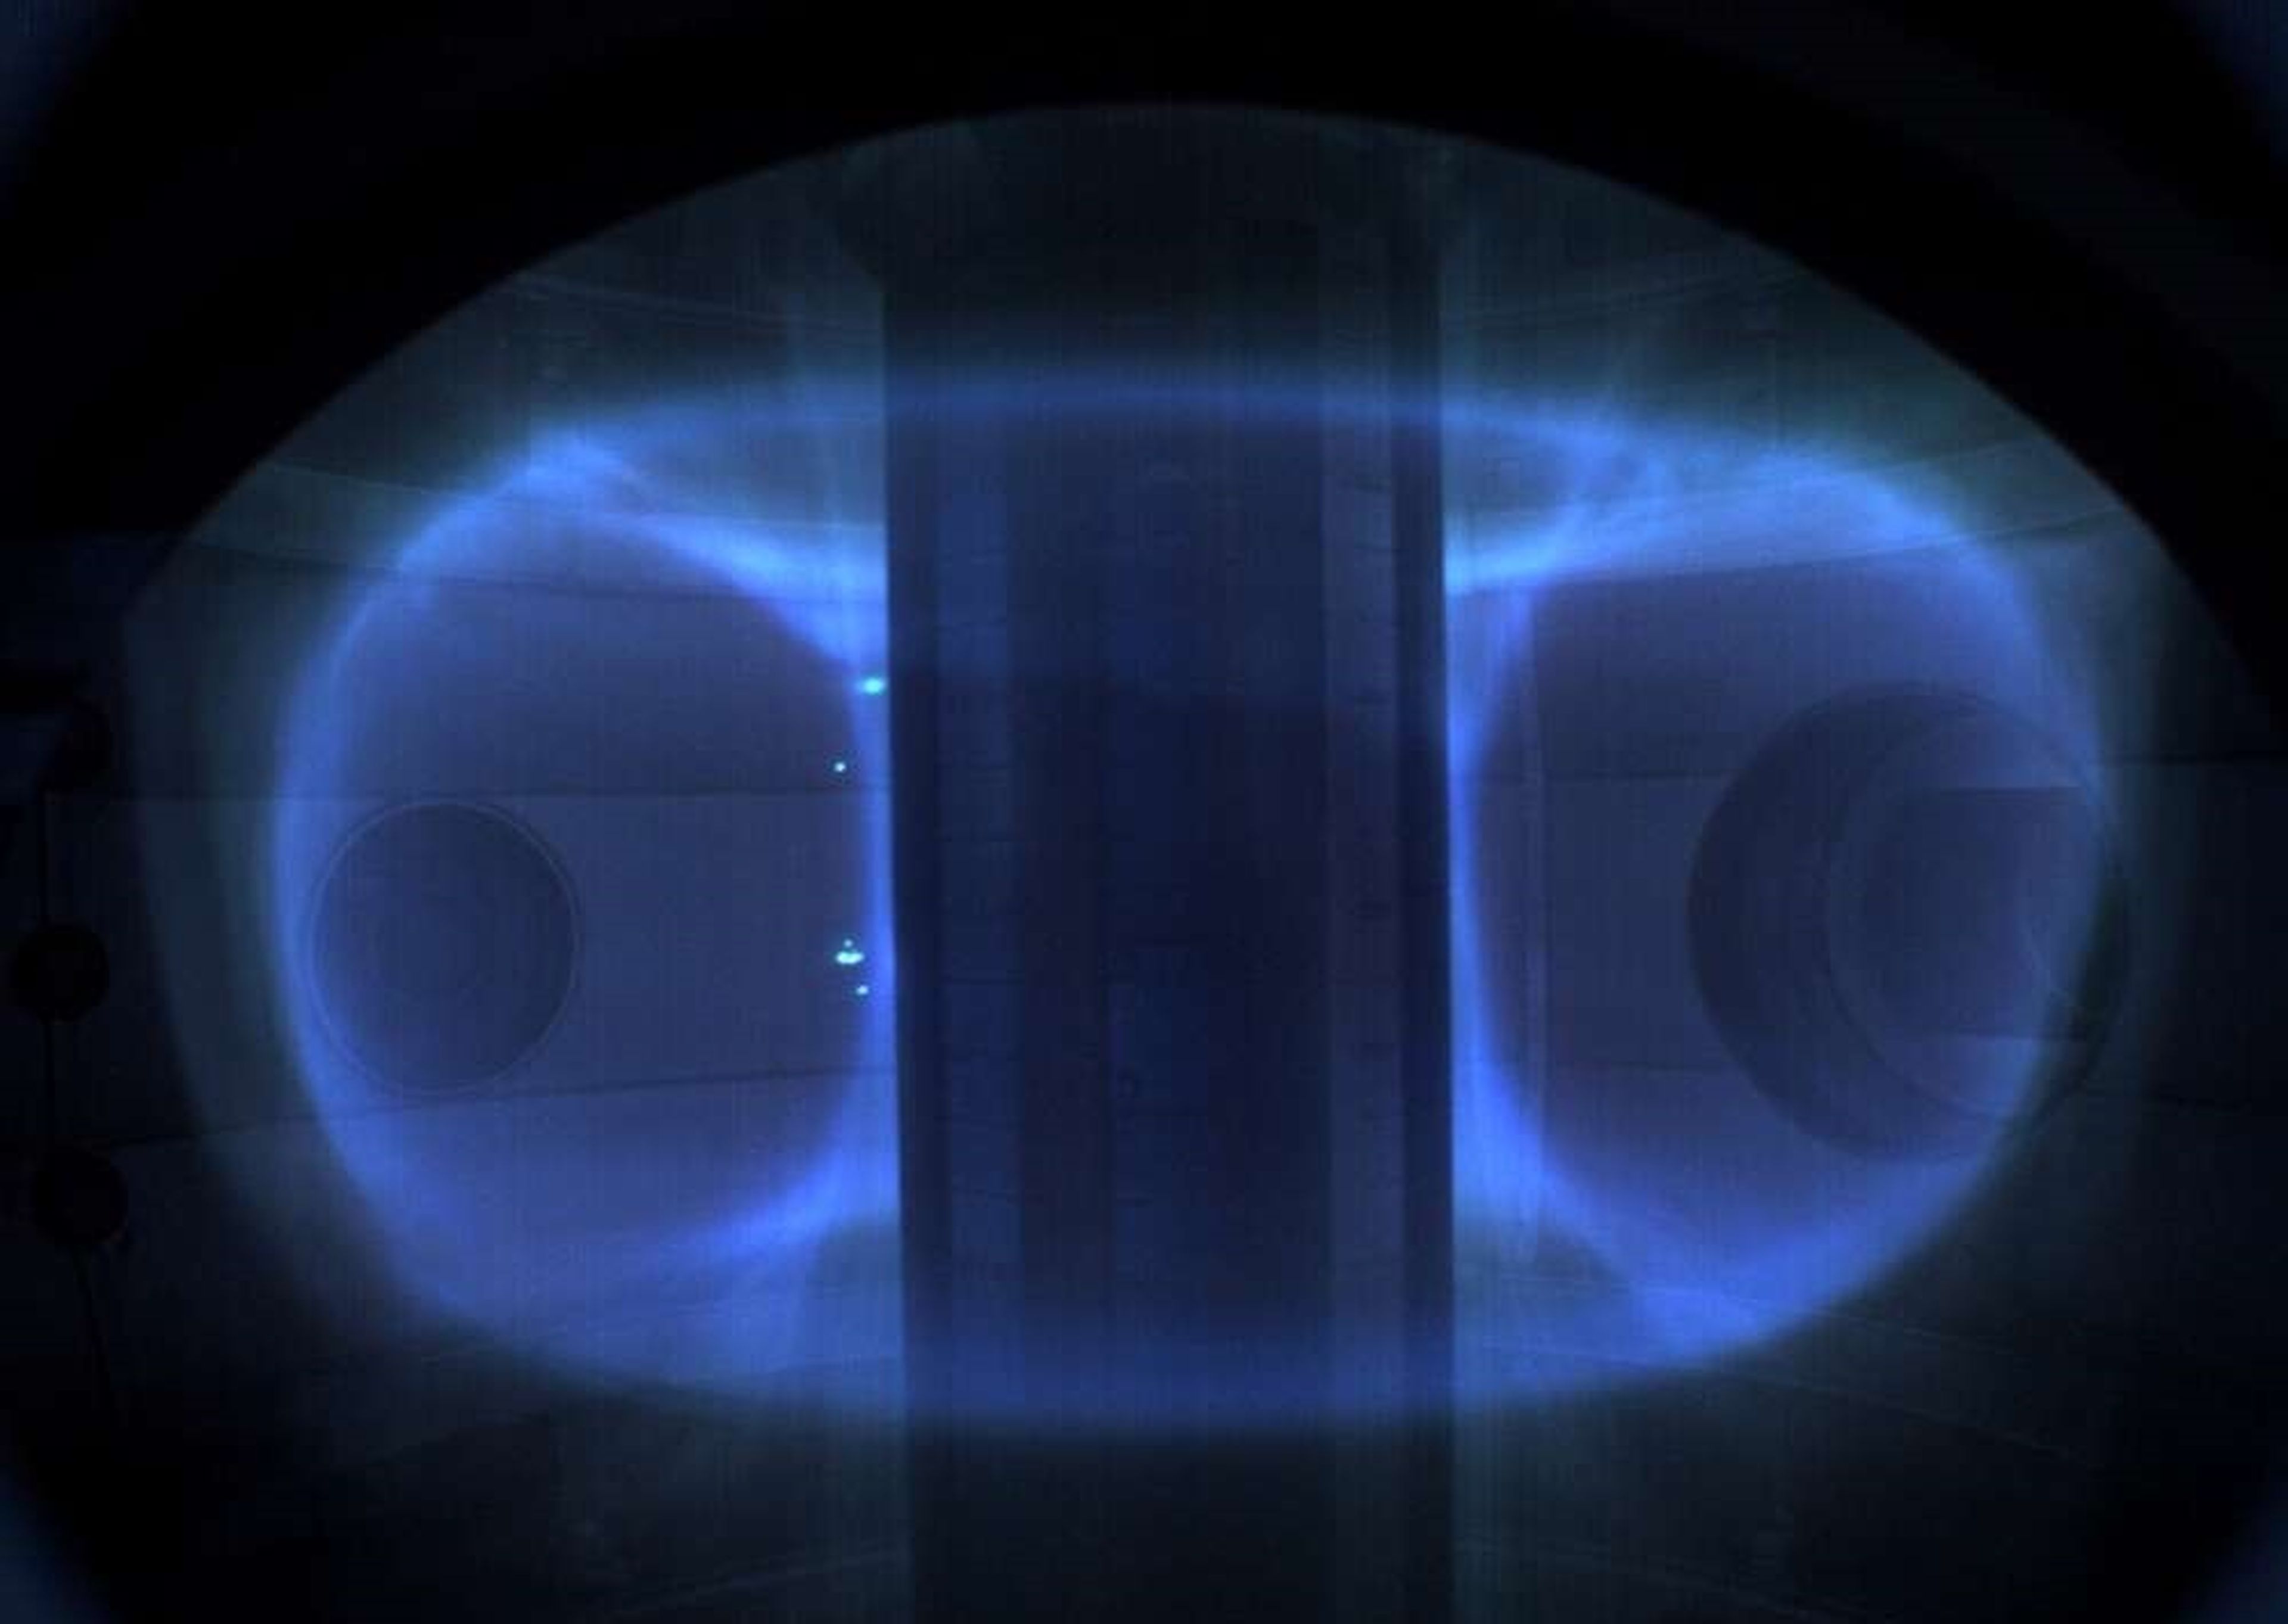 Un mini reactor de fusión nuclear alcanza temperaturas más altas que el Sol